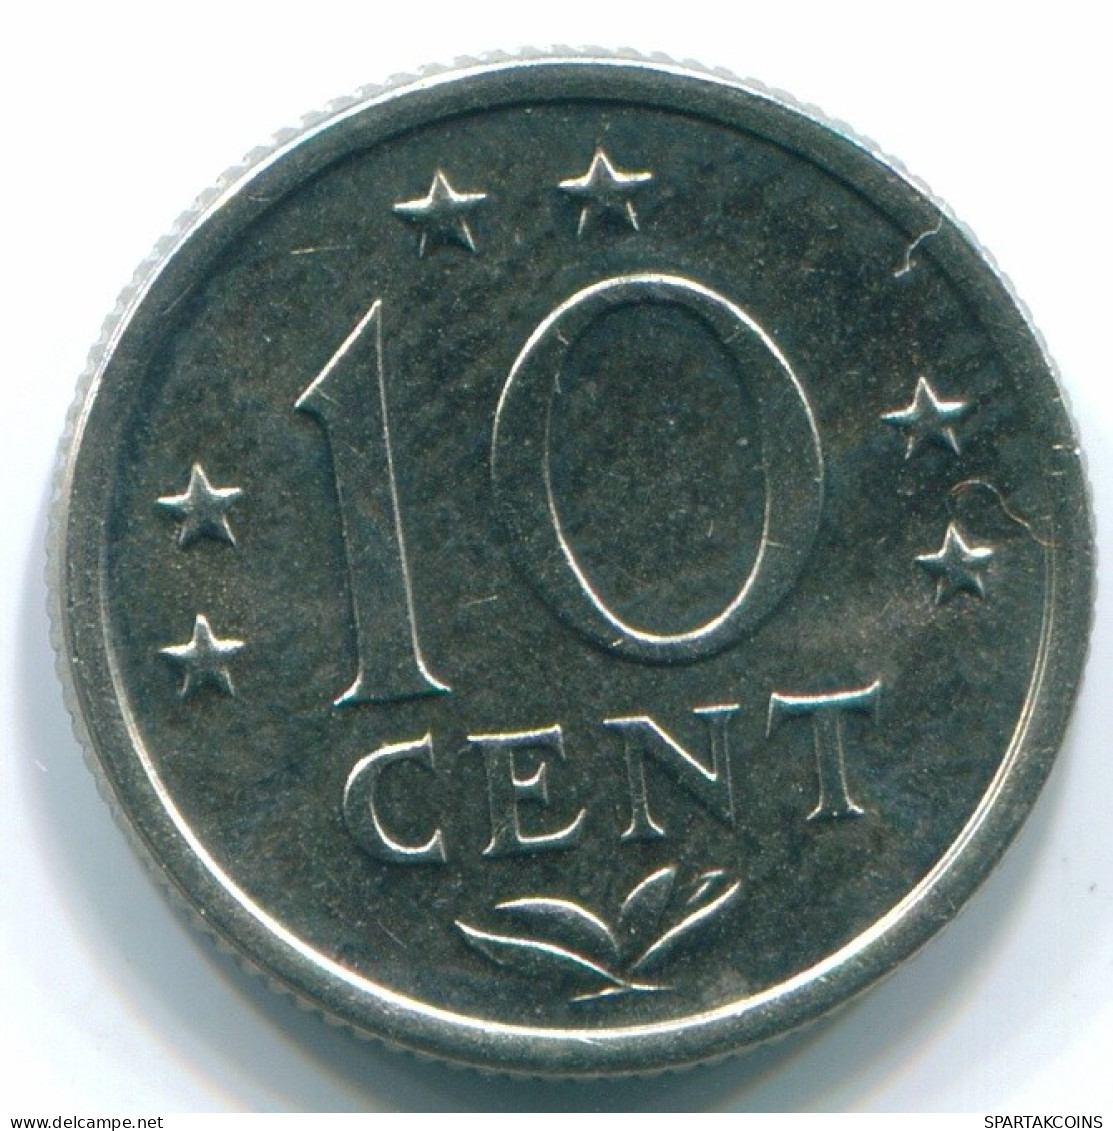 10 CENTS 1971 NIEDERLÄNDISCHE ANTILLEN Nickel Koloniale Münze #S13425.D.A - Antillas Neerlandesas